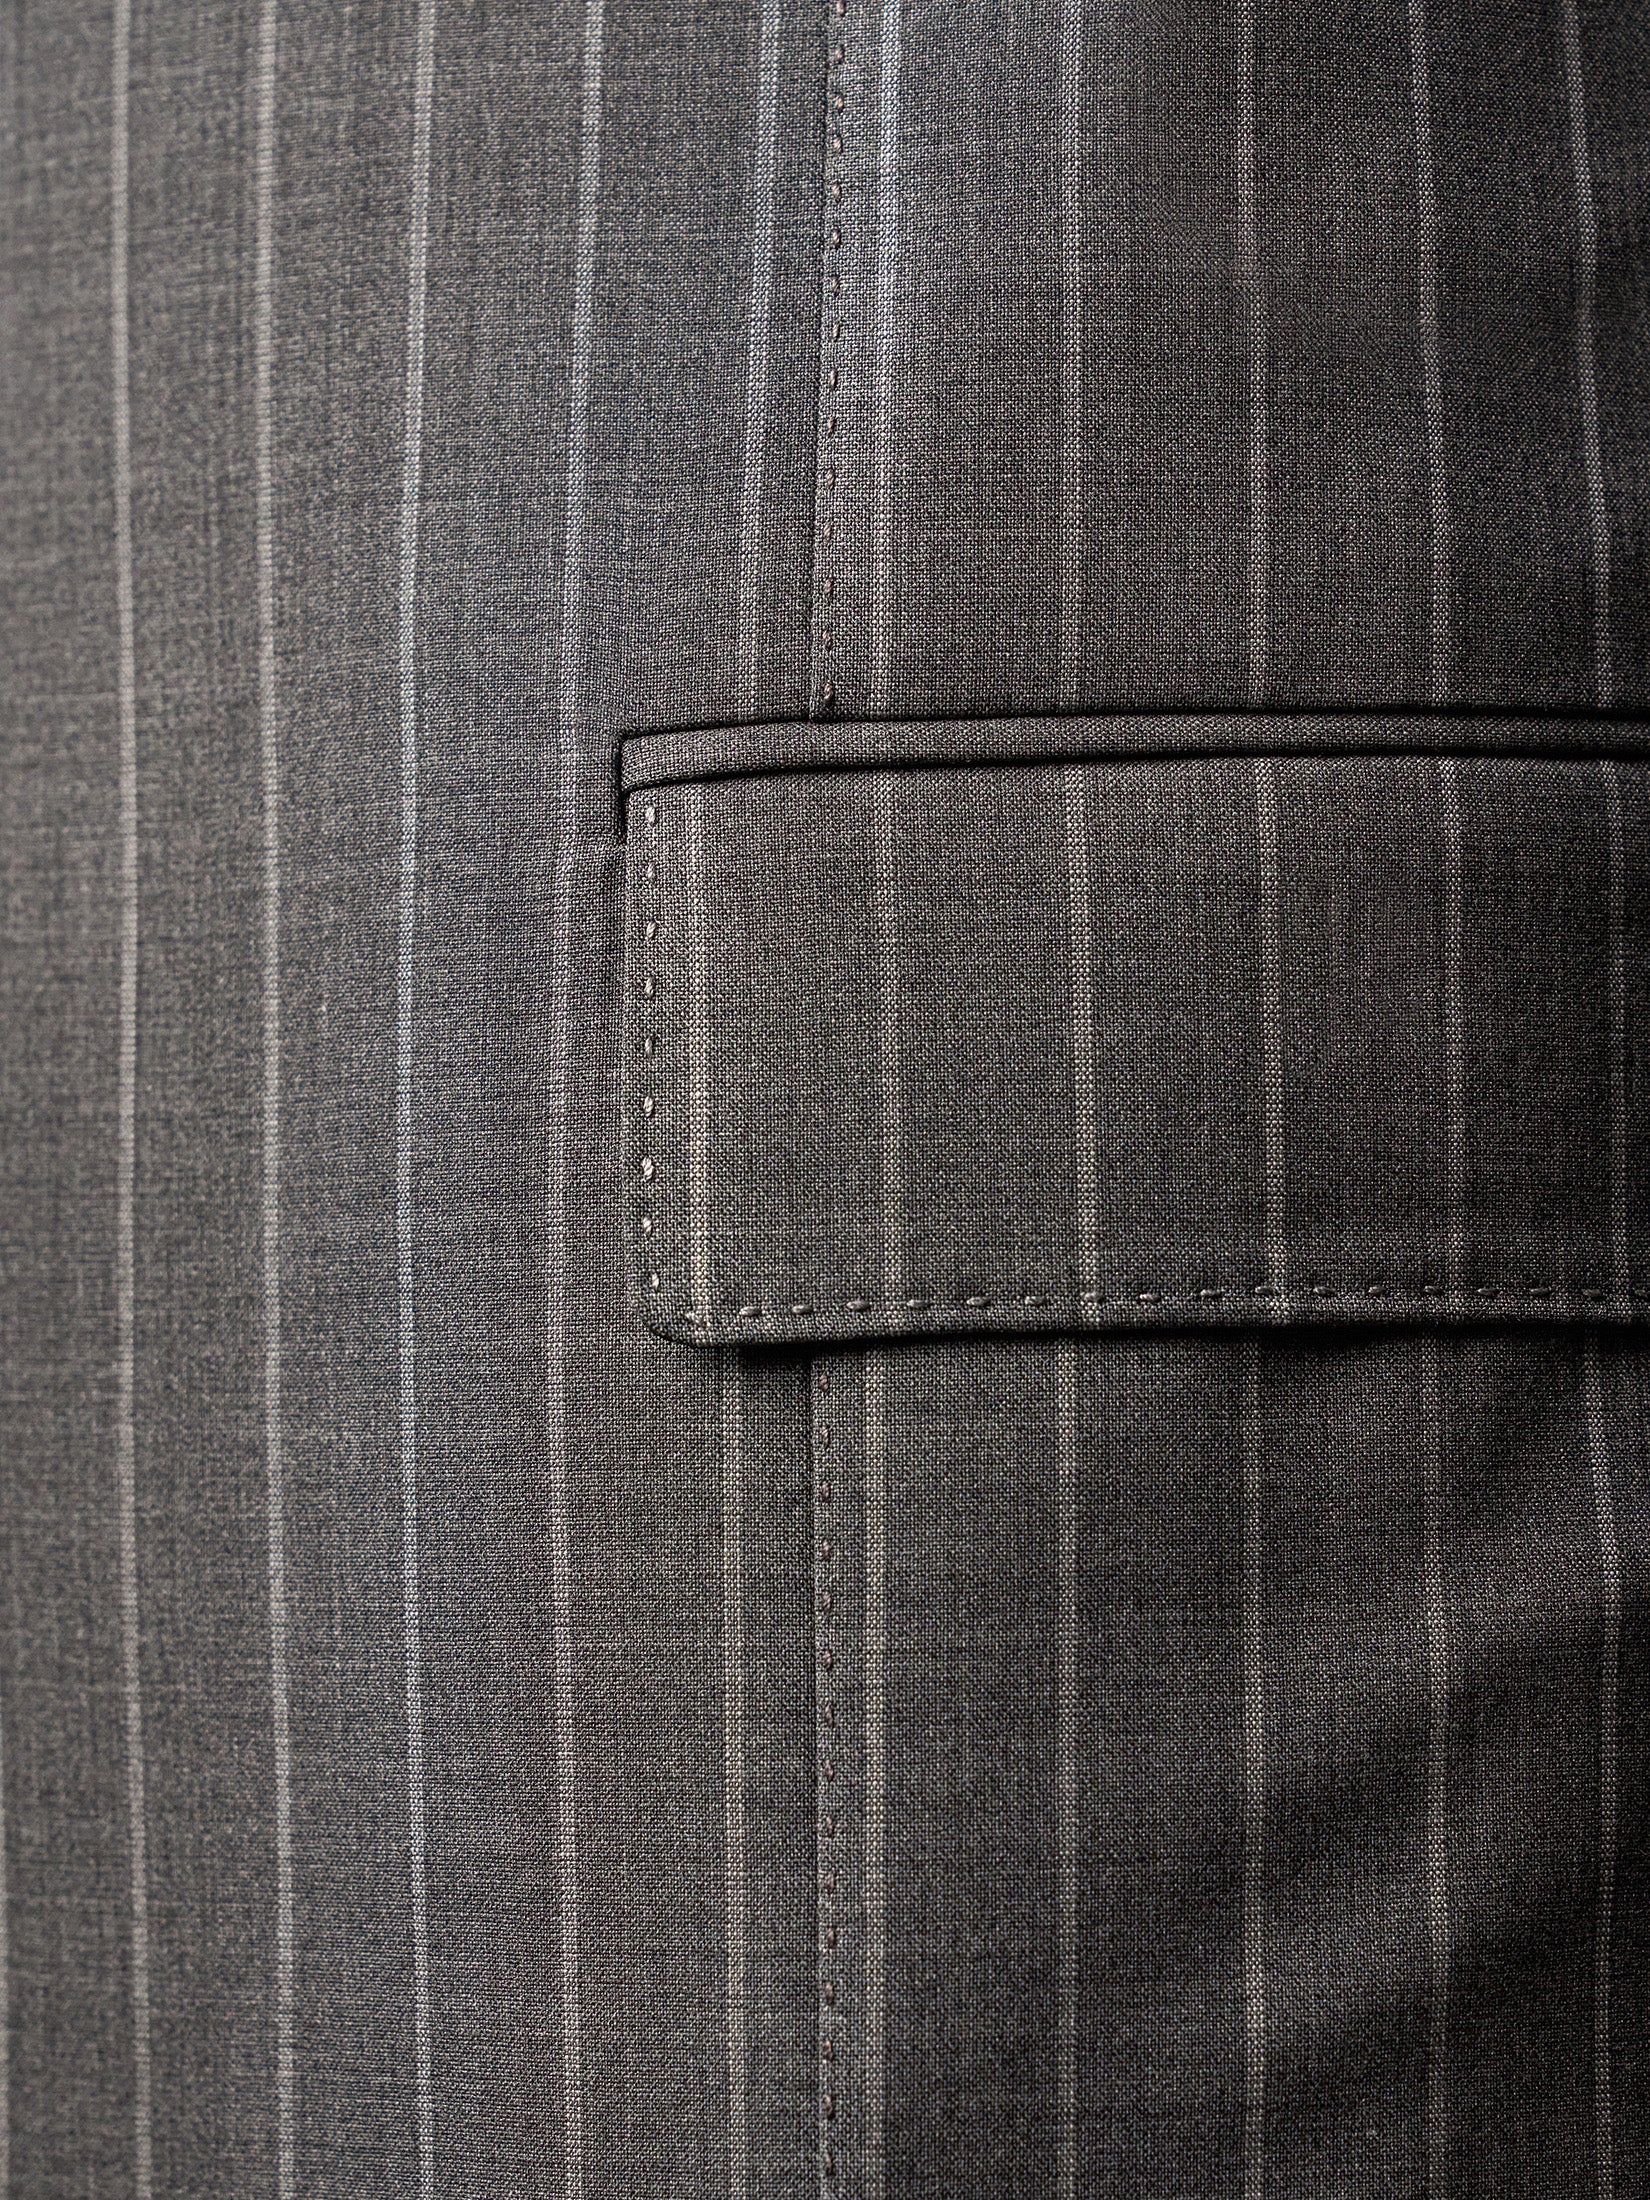 中灰色细条纹超级 160 年代套装